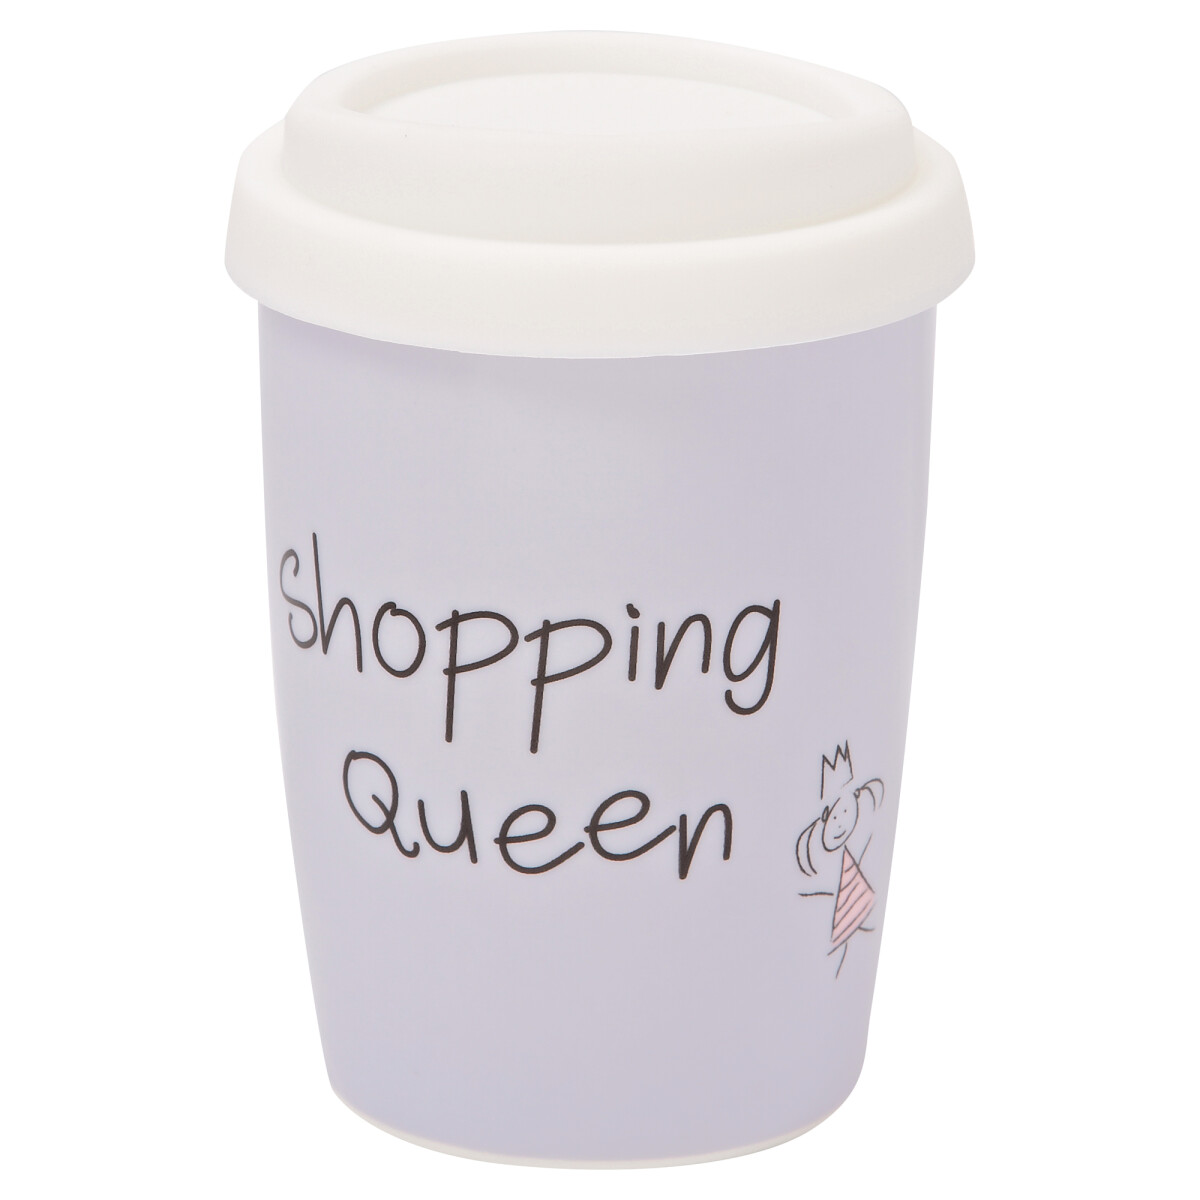 Mea Living Kaffee Tasse Becher Shopping Queen 